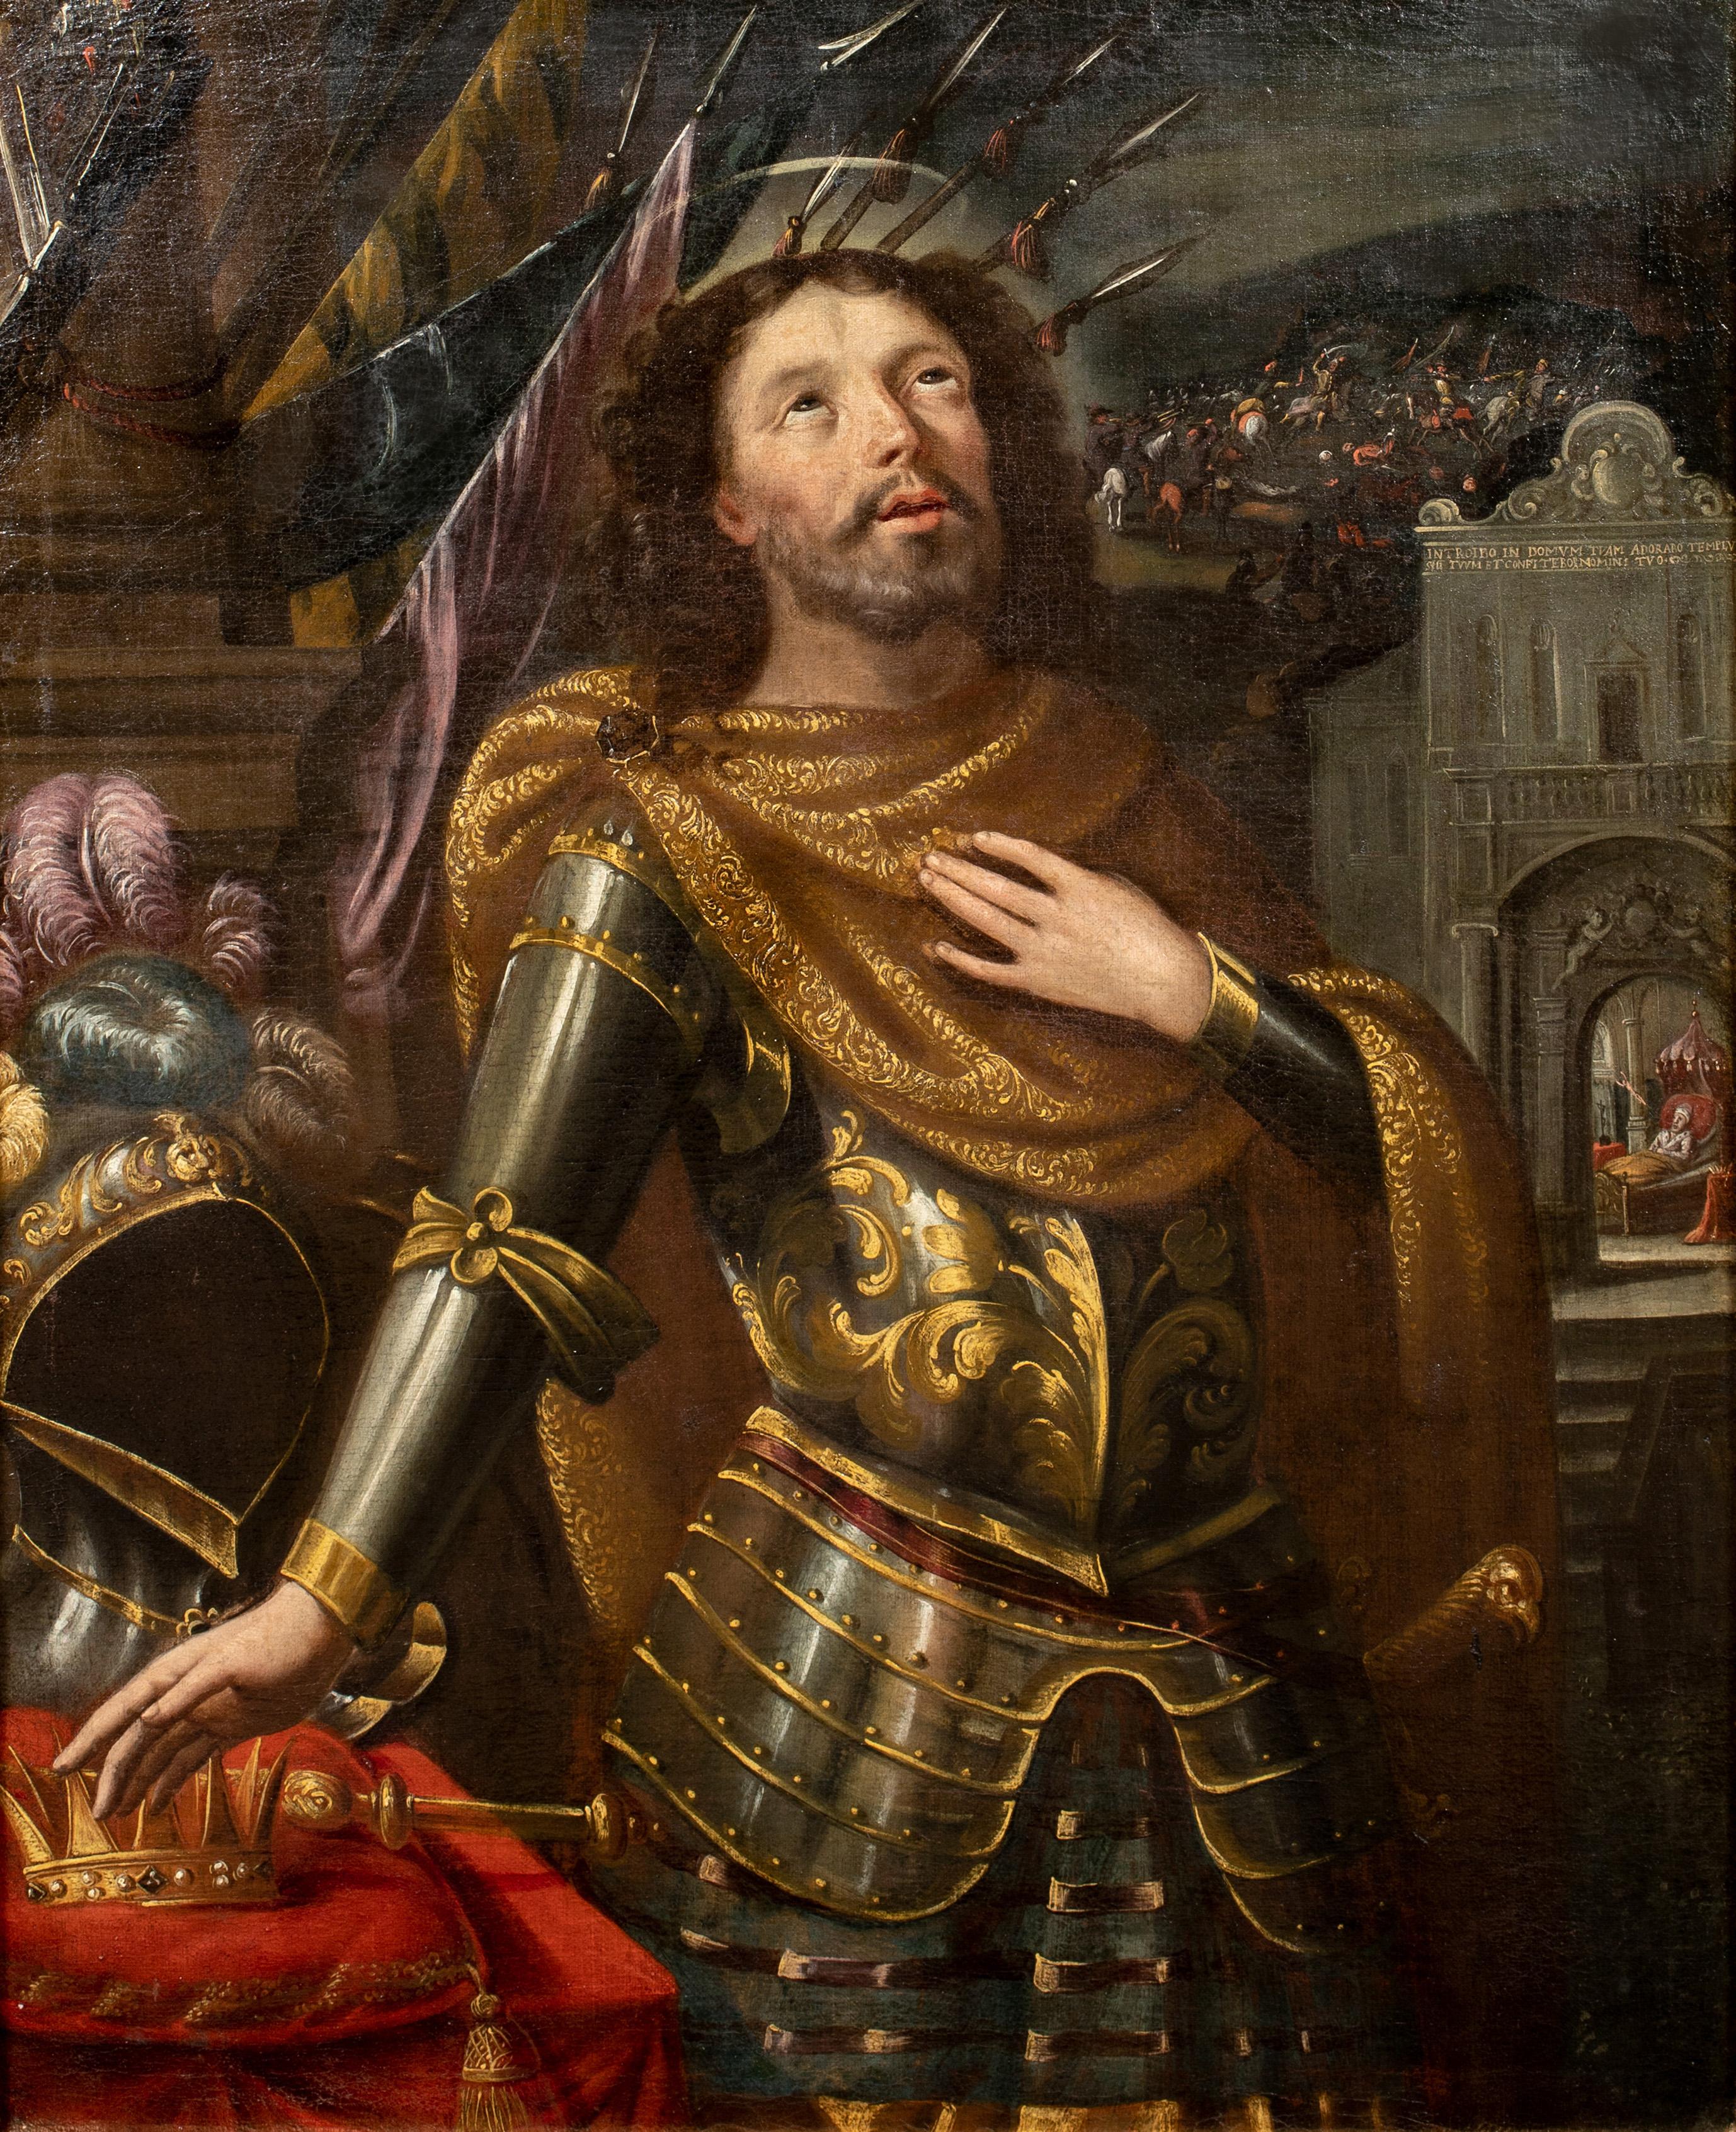 Unknown Portrait Painting - Portrait Of Saint Louis IX, King of France (1214-1270), 16th Century